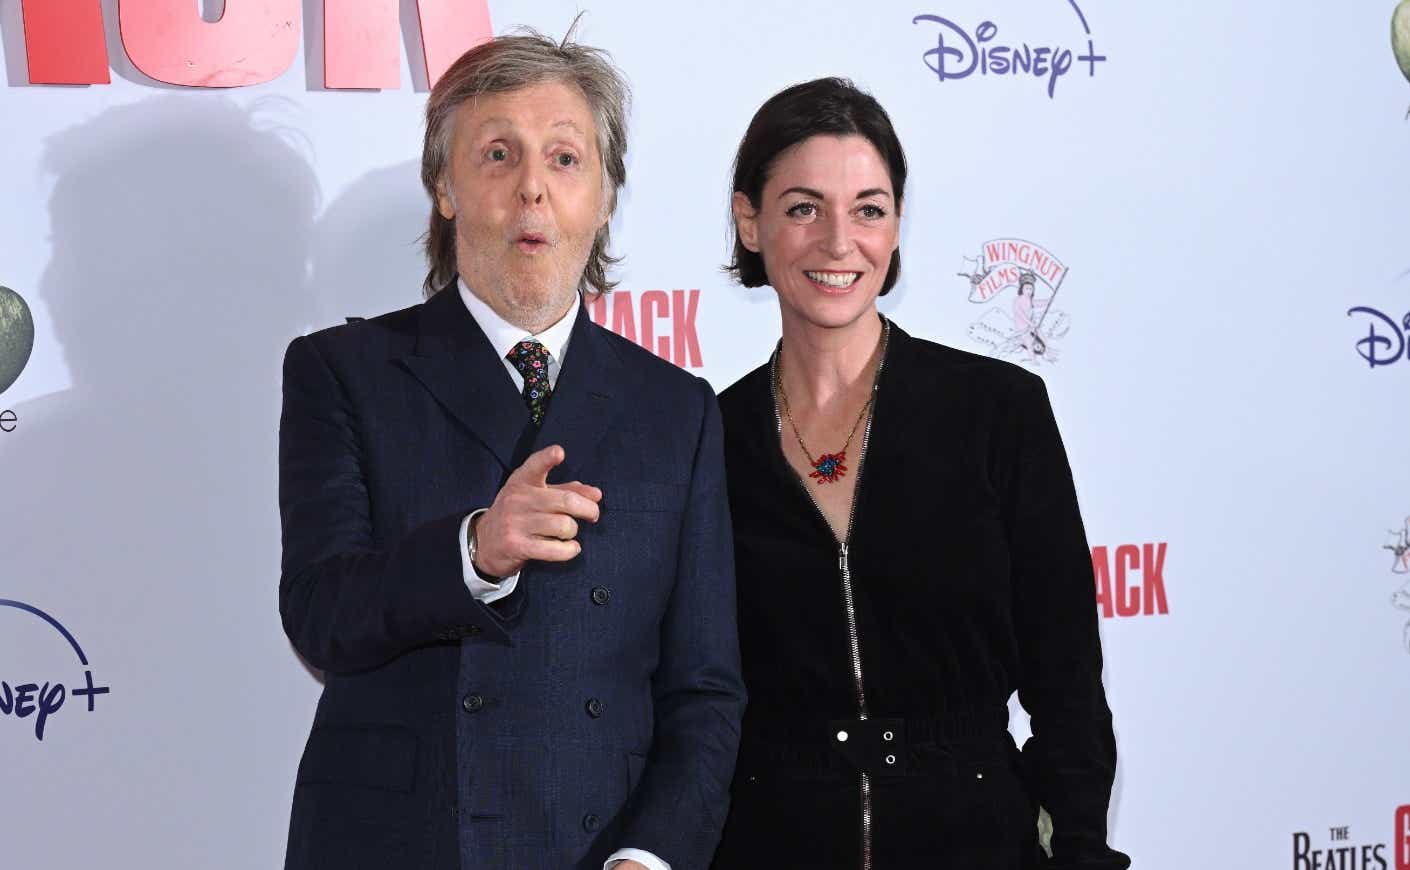 Paul McCartney and Mary McCartney